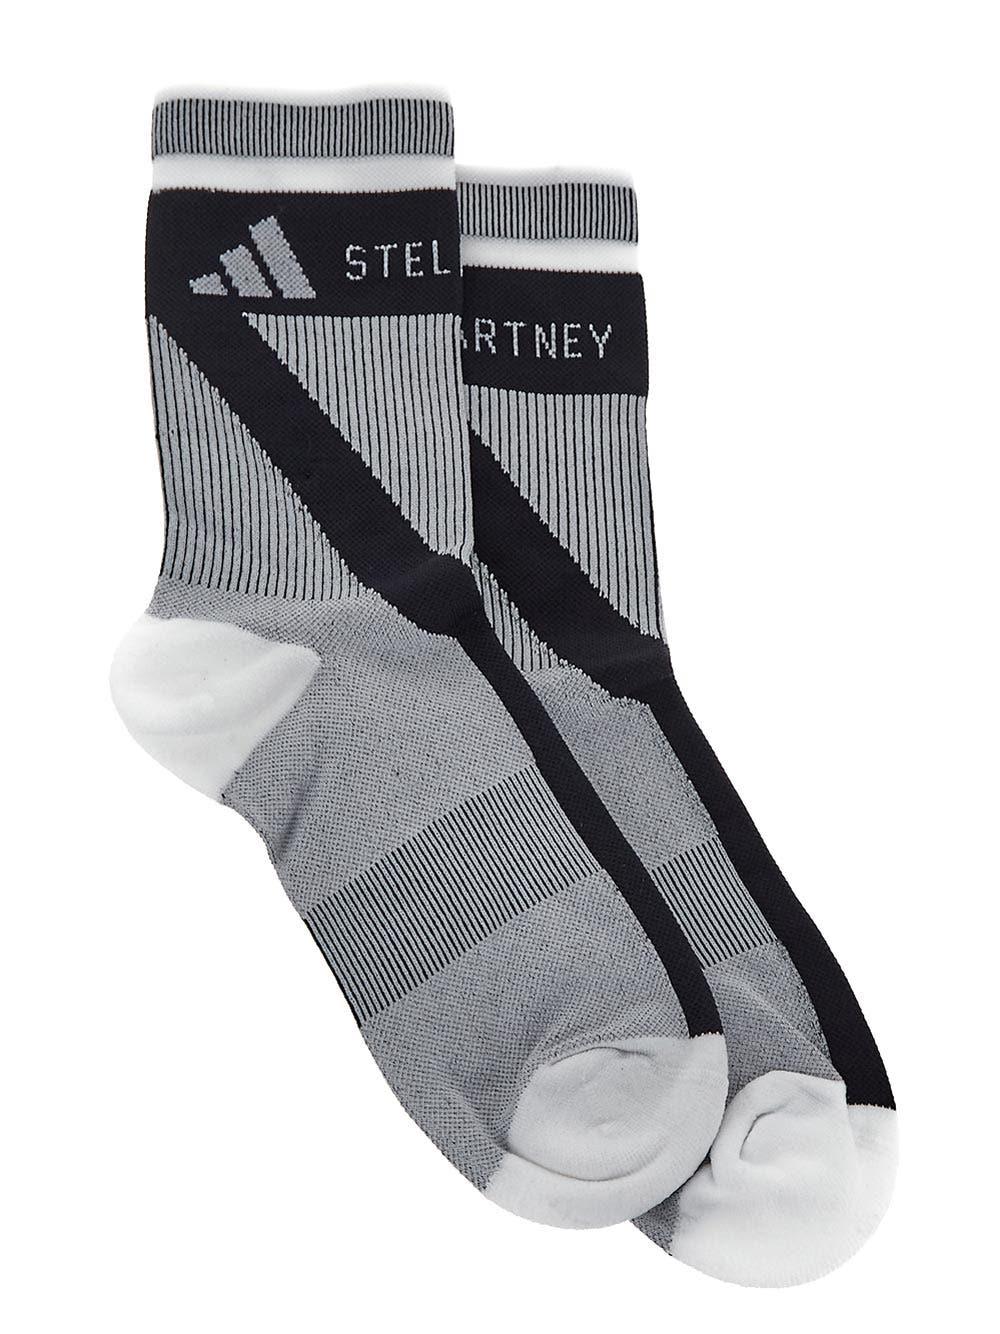 Adidas by Stella McCartney Logo Socks